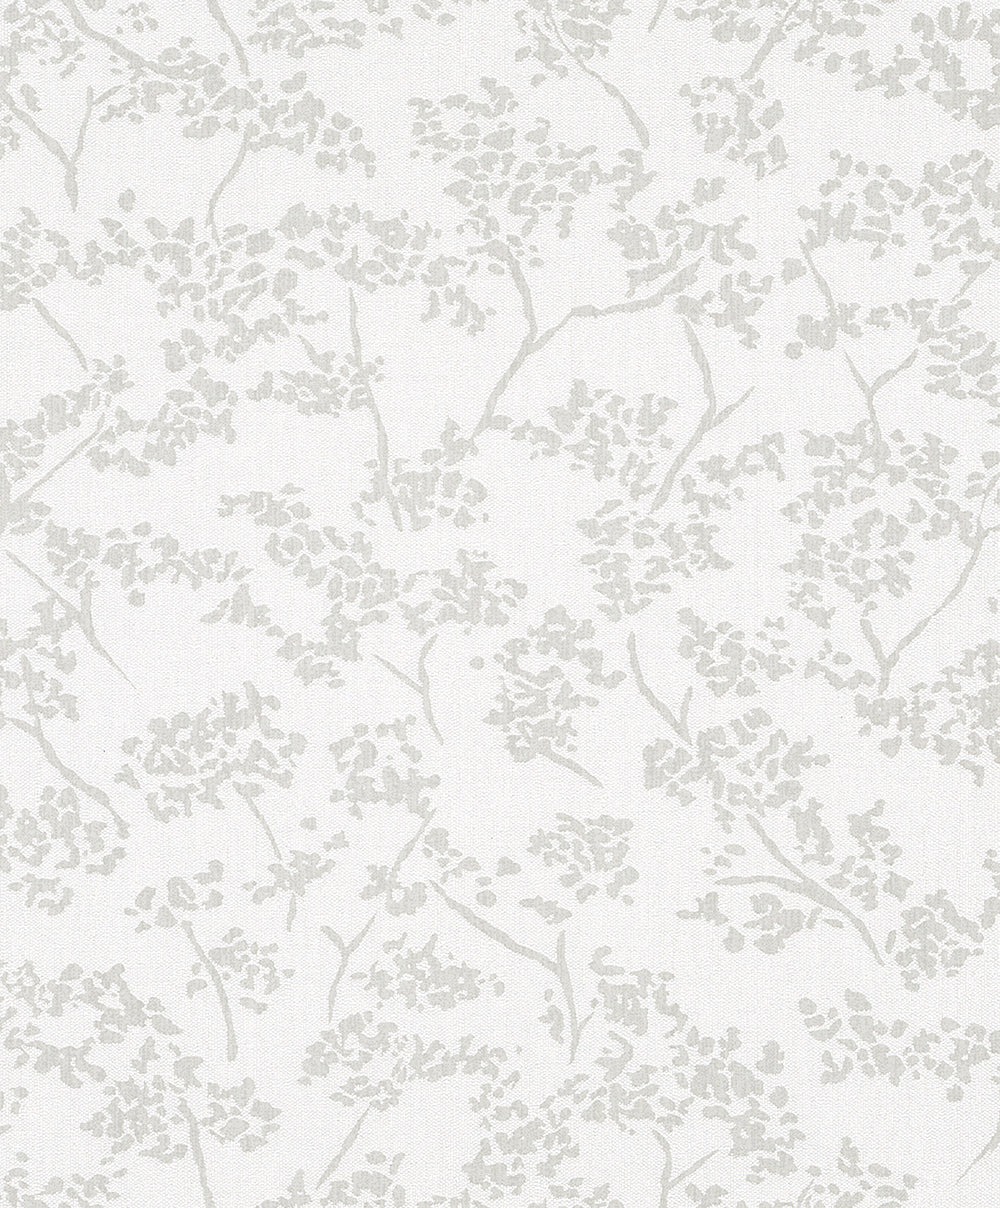 Schoner Wohnen New Spirit - Vintage Floral botanical wallpaper Marburg Roll Grey  32703